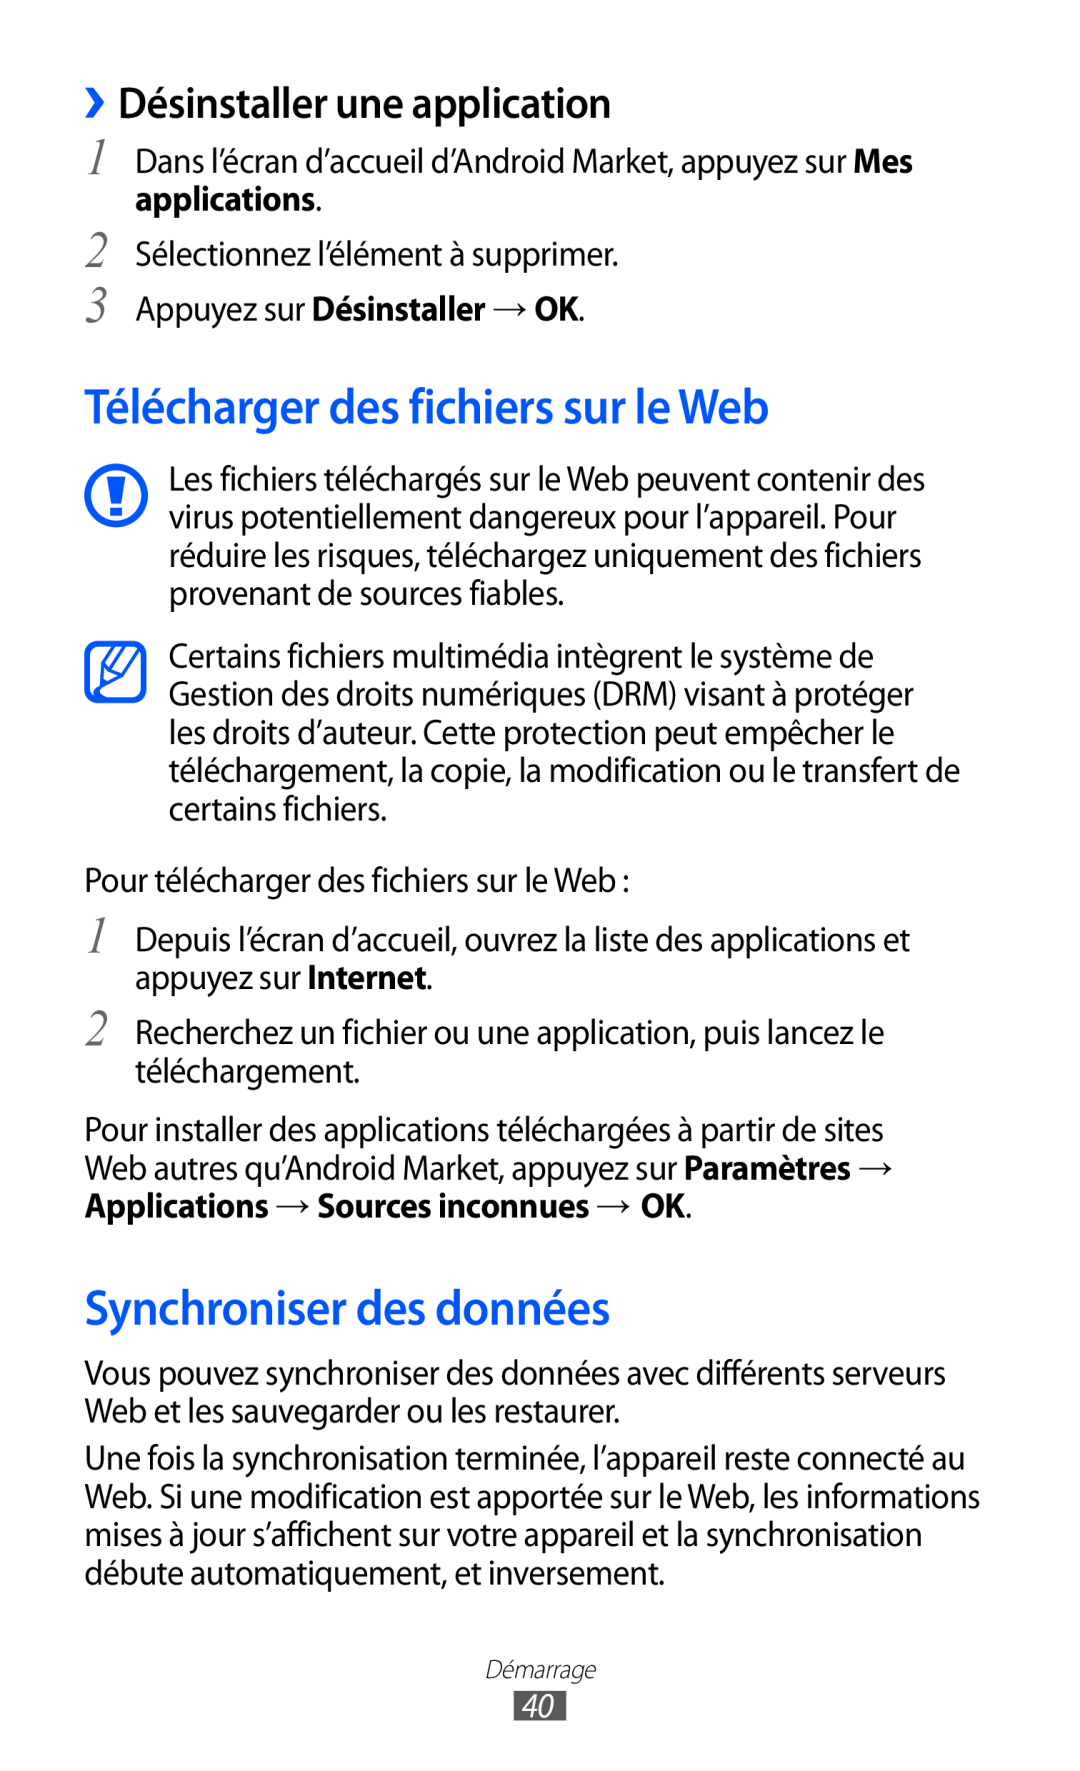 Samsung GT-B5510CAANRJ manual Télécharger des fichiers sur le Web, Synchroniser des données, ››Désinstaller une application 